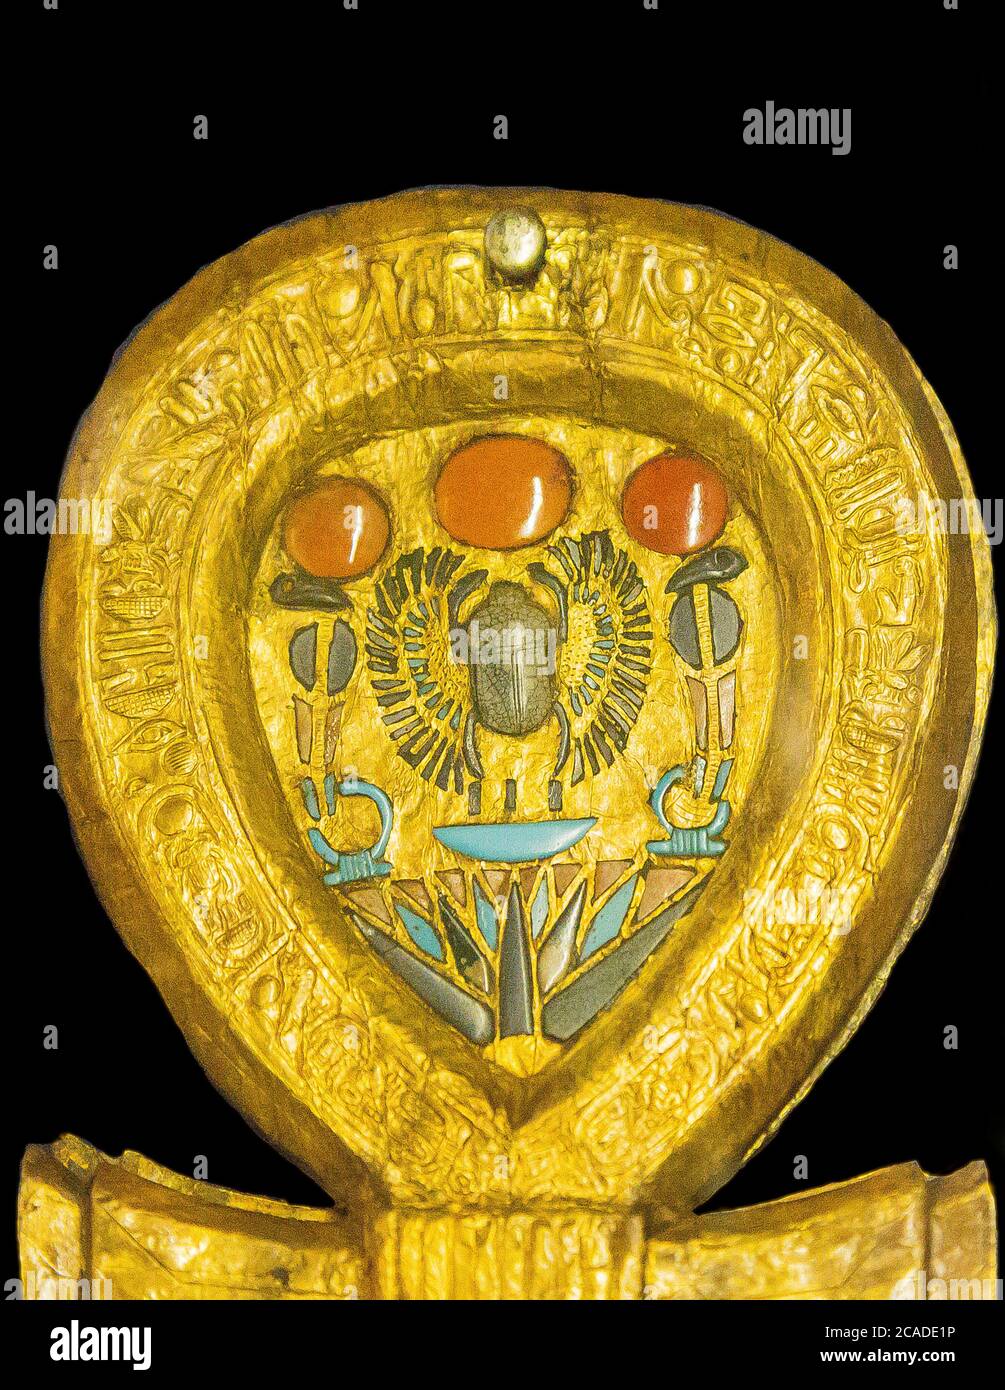 Egipto, el Cairo, Museo Egipcio, joyas de Tutankhamon: Caja de espejo en forma de un signo de Ankh. Dentro del lazo, un escarabajo alado. Foto de stock